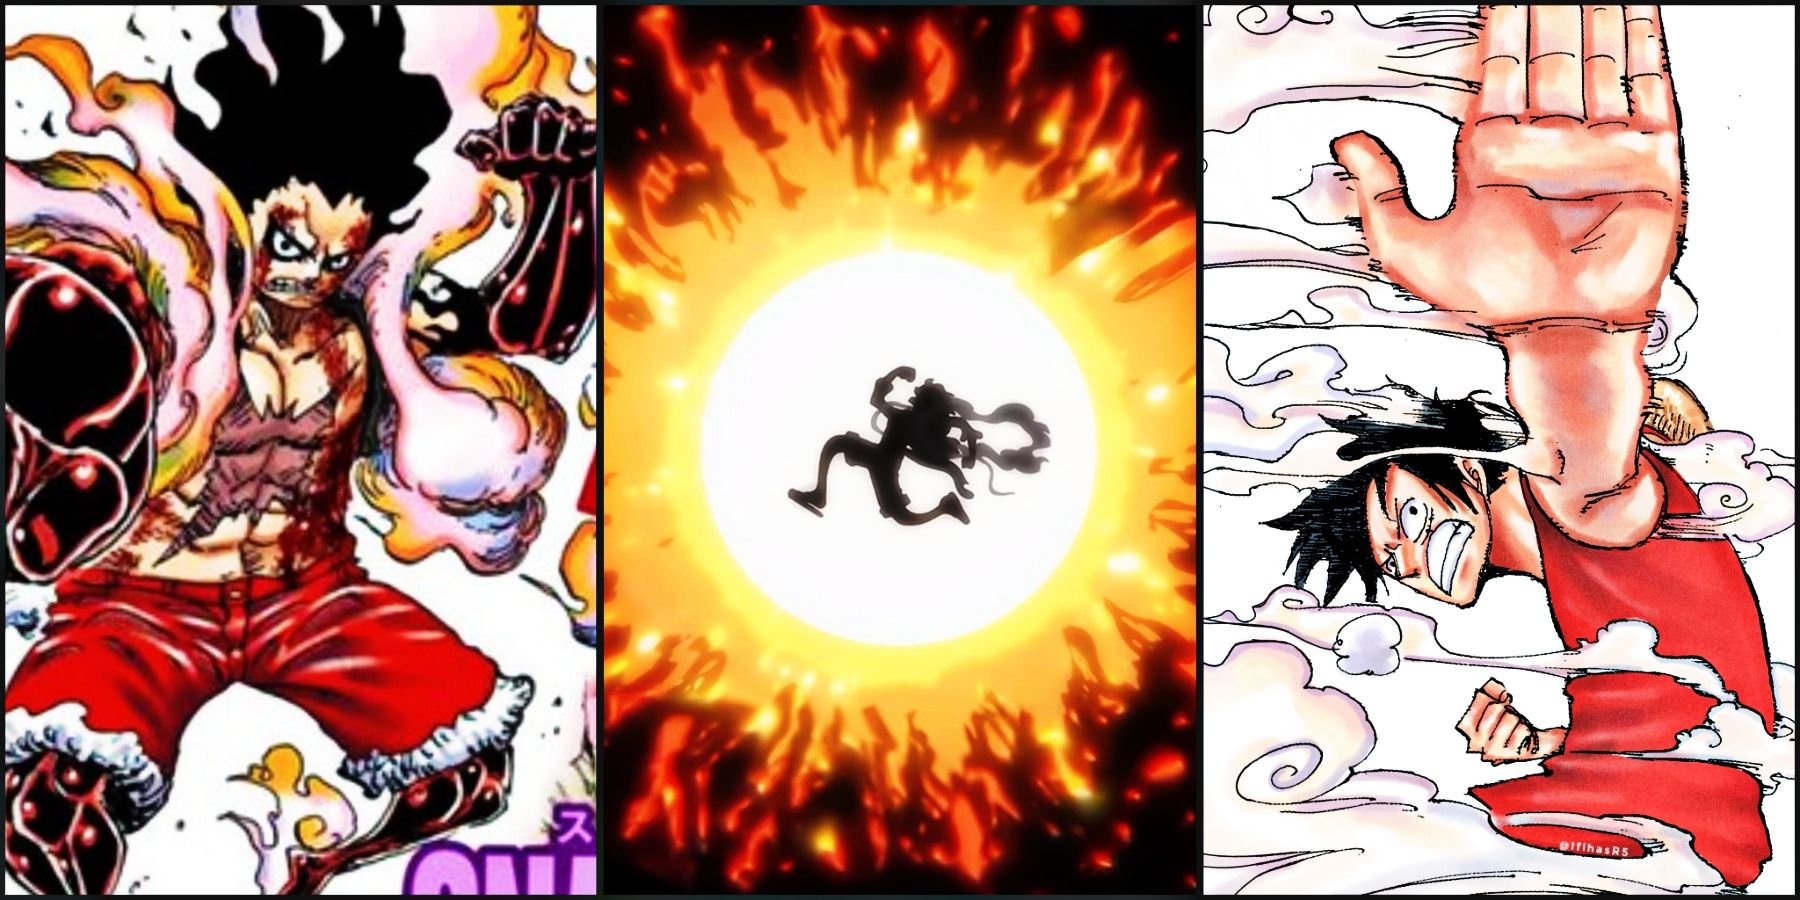 One Piece: Qual poderia ser o próximo power-up de Luffy?